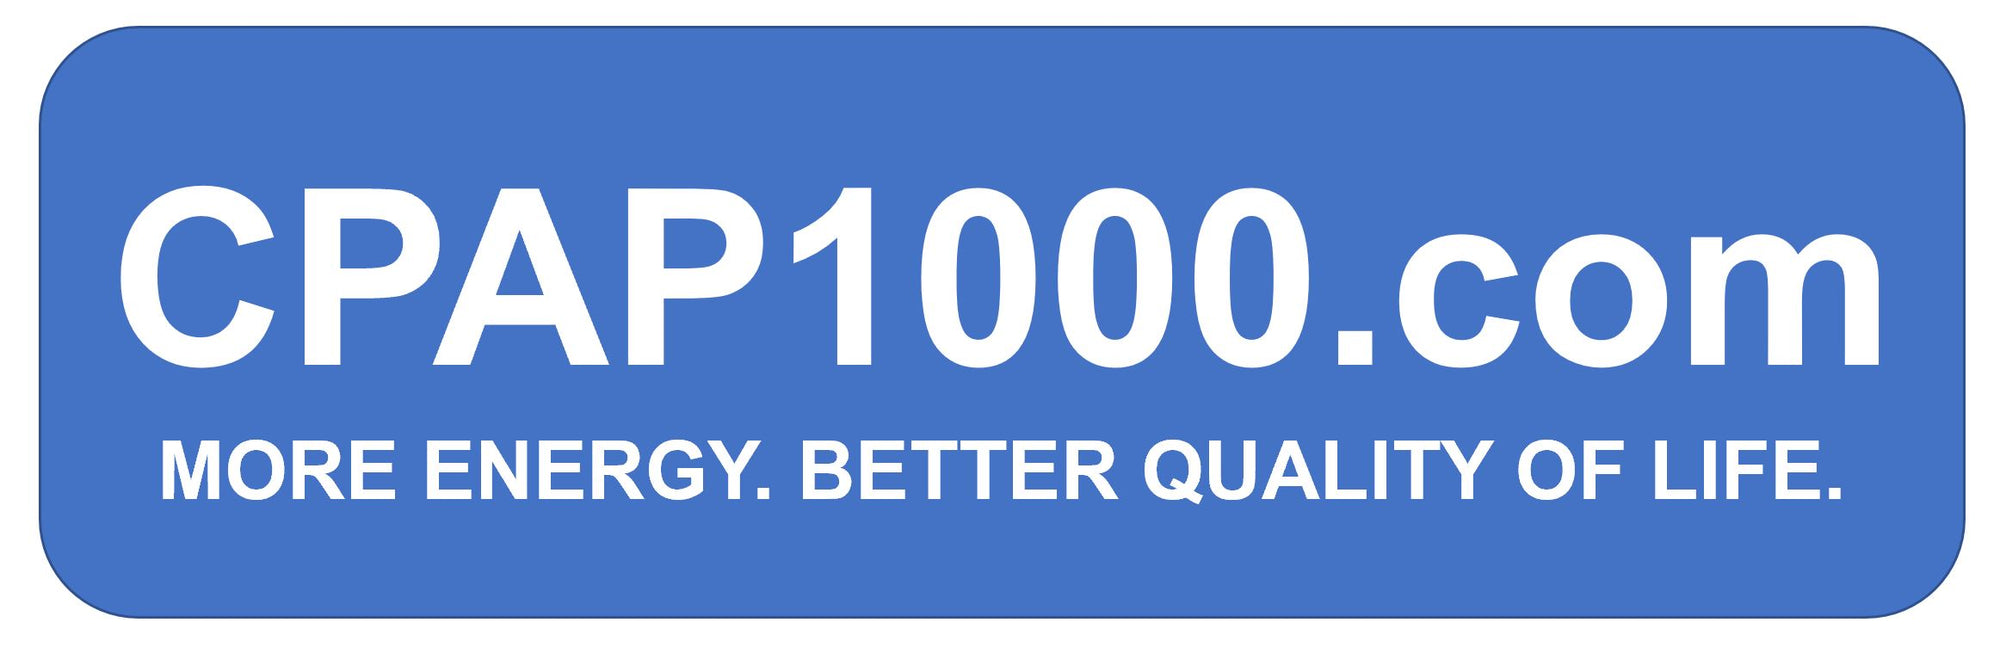 CPAP1000.com